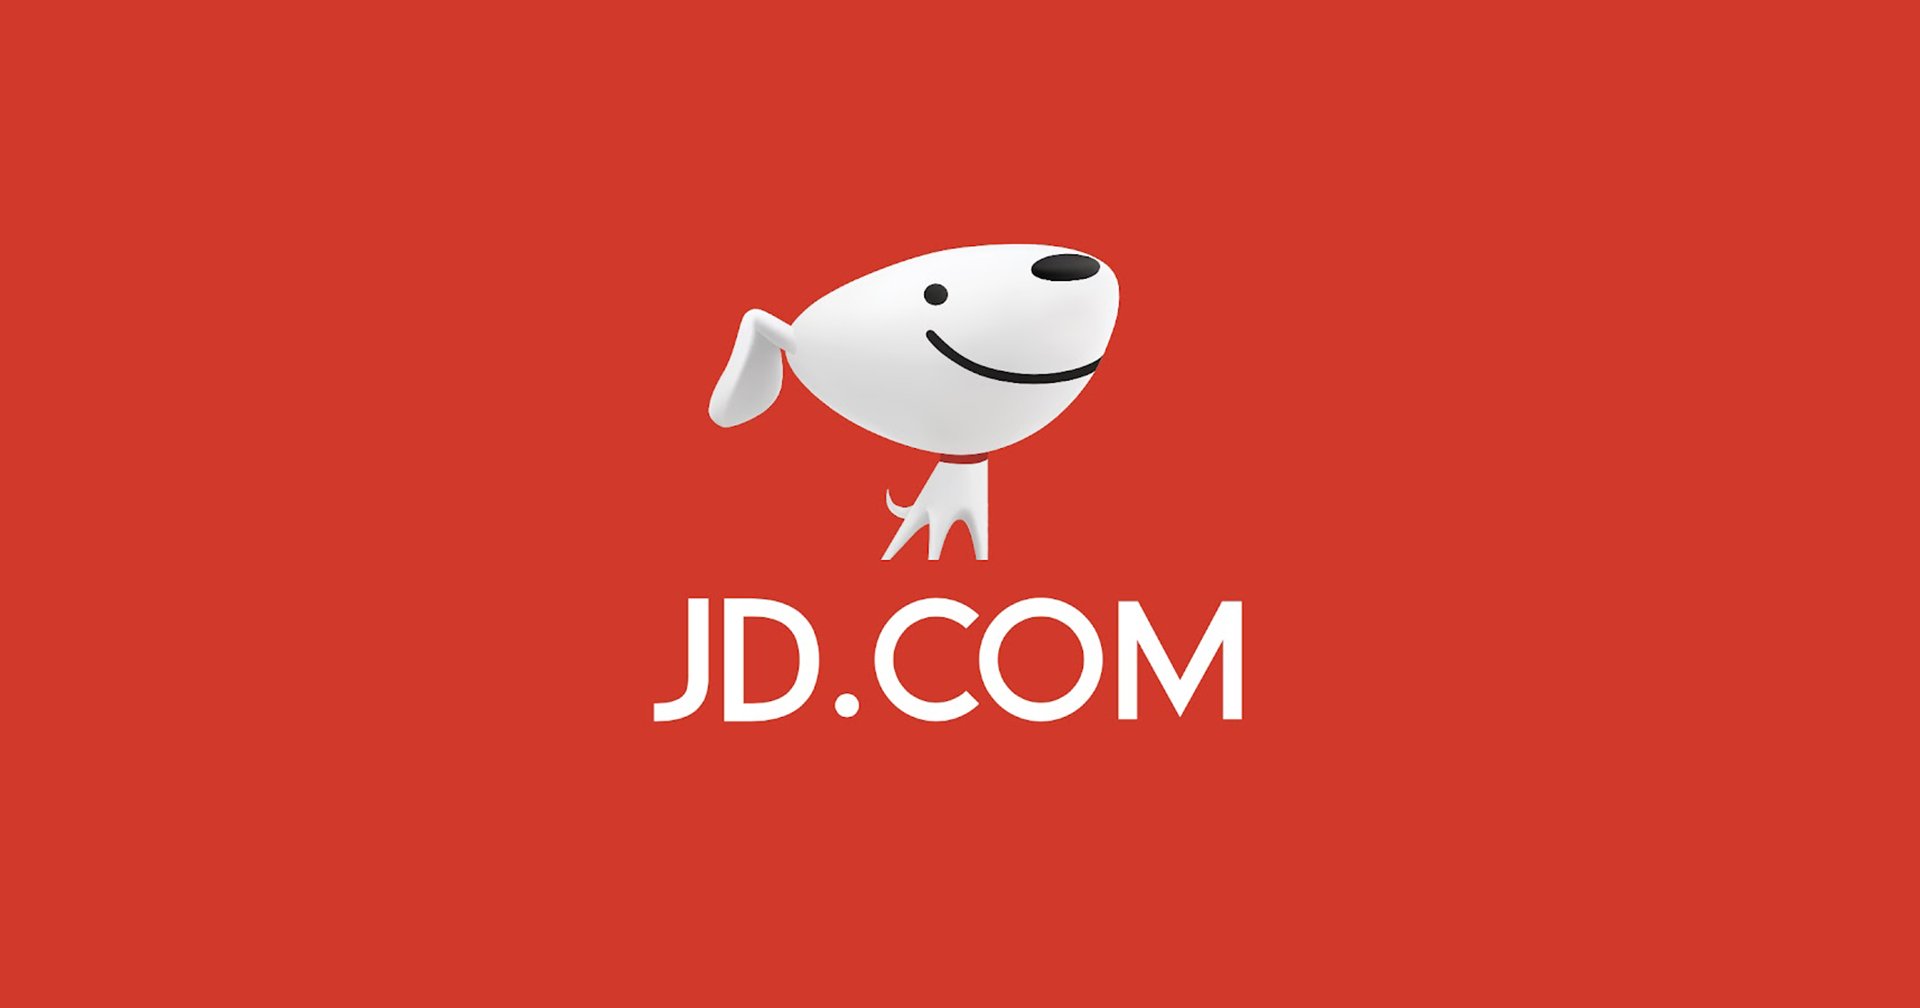 JDcom ยักษ์ใหญ่อีคอมเมิร์ซจีน เล็งถอนการลงทุนจากอินโดนีเซียและไทย